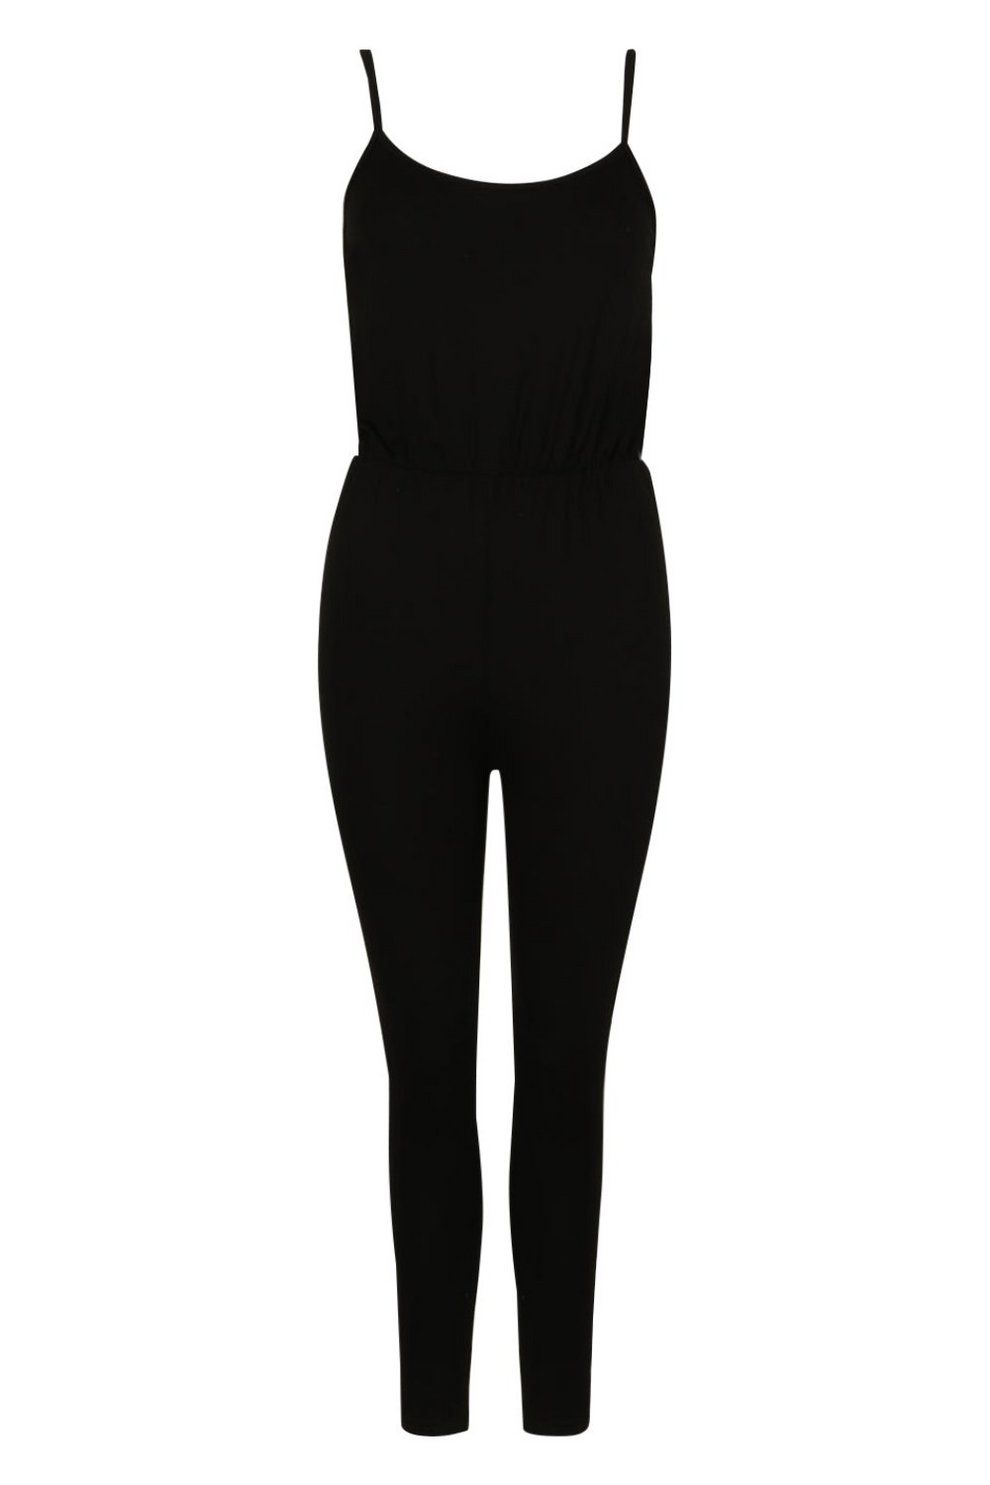 Petite Side Stripe Jersey Jumpsuit | Boohoo.com (US & CA)